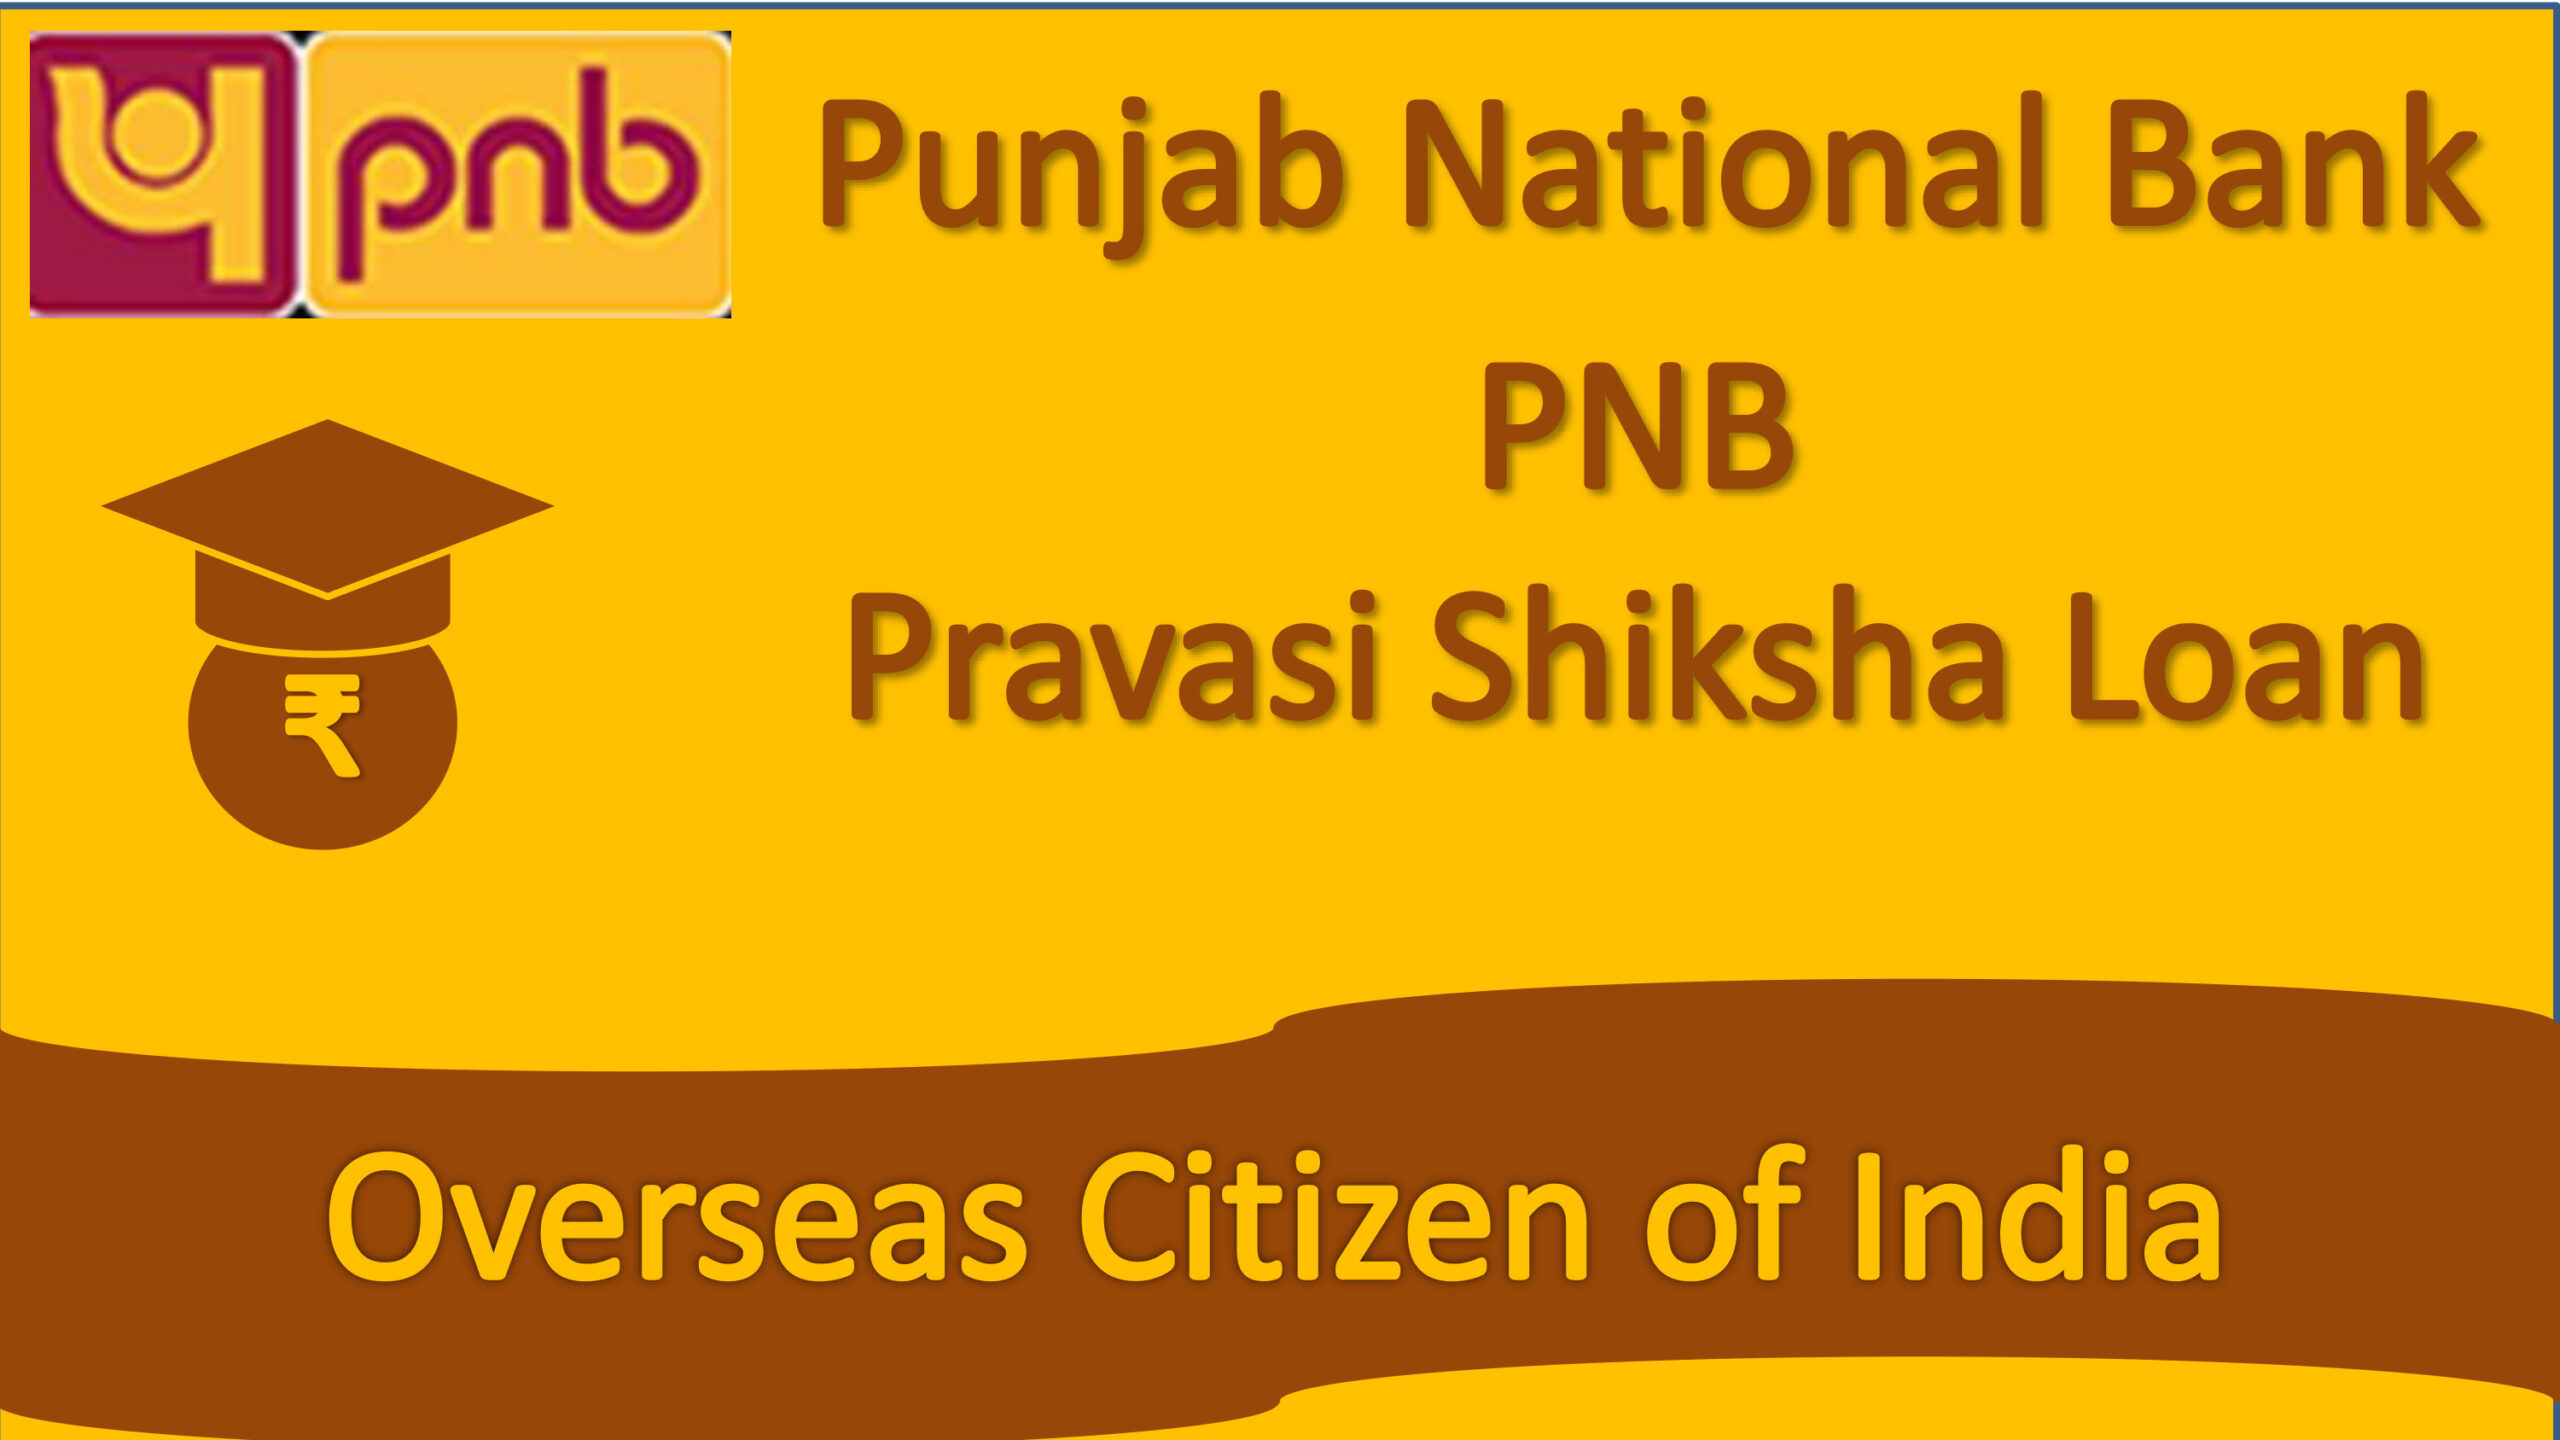 PNB Pravasi Shiksha Loan